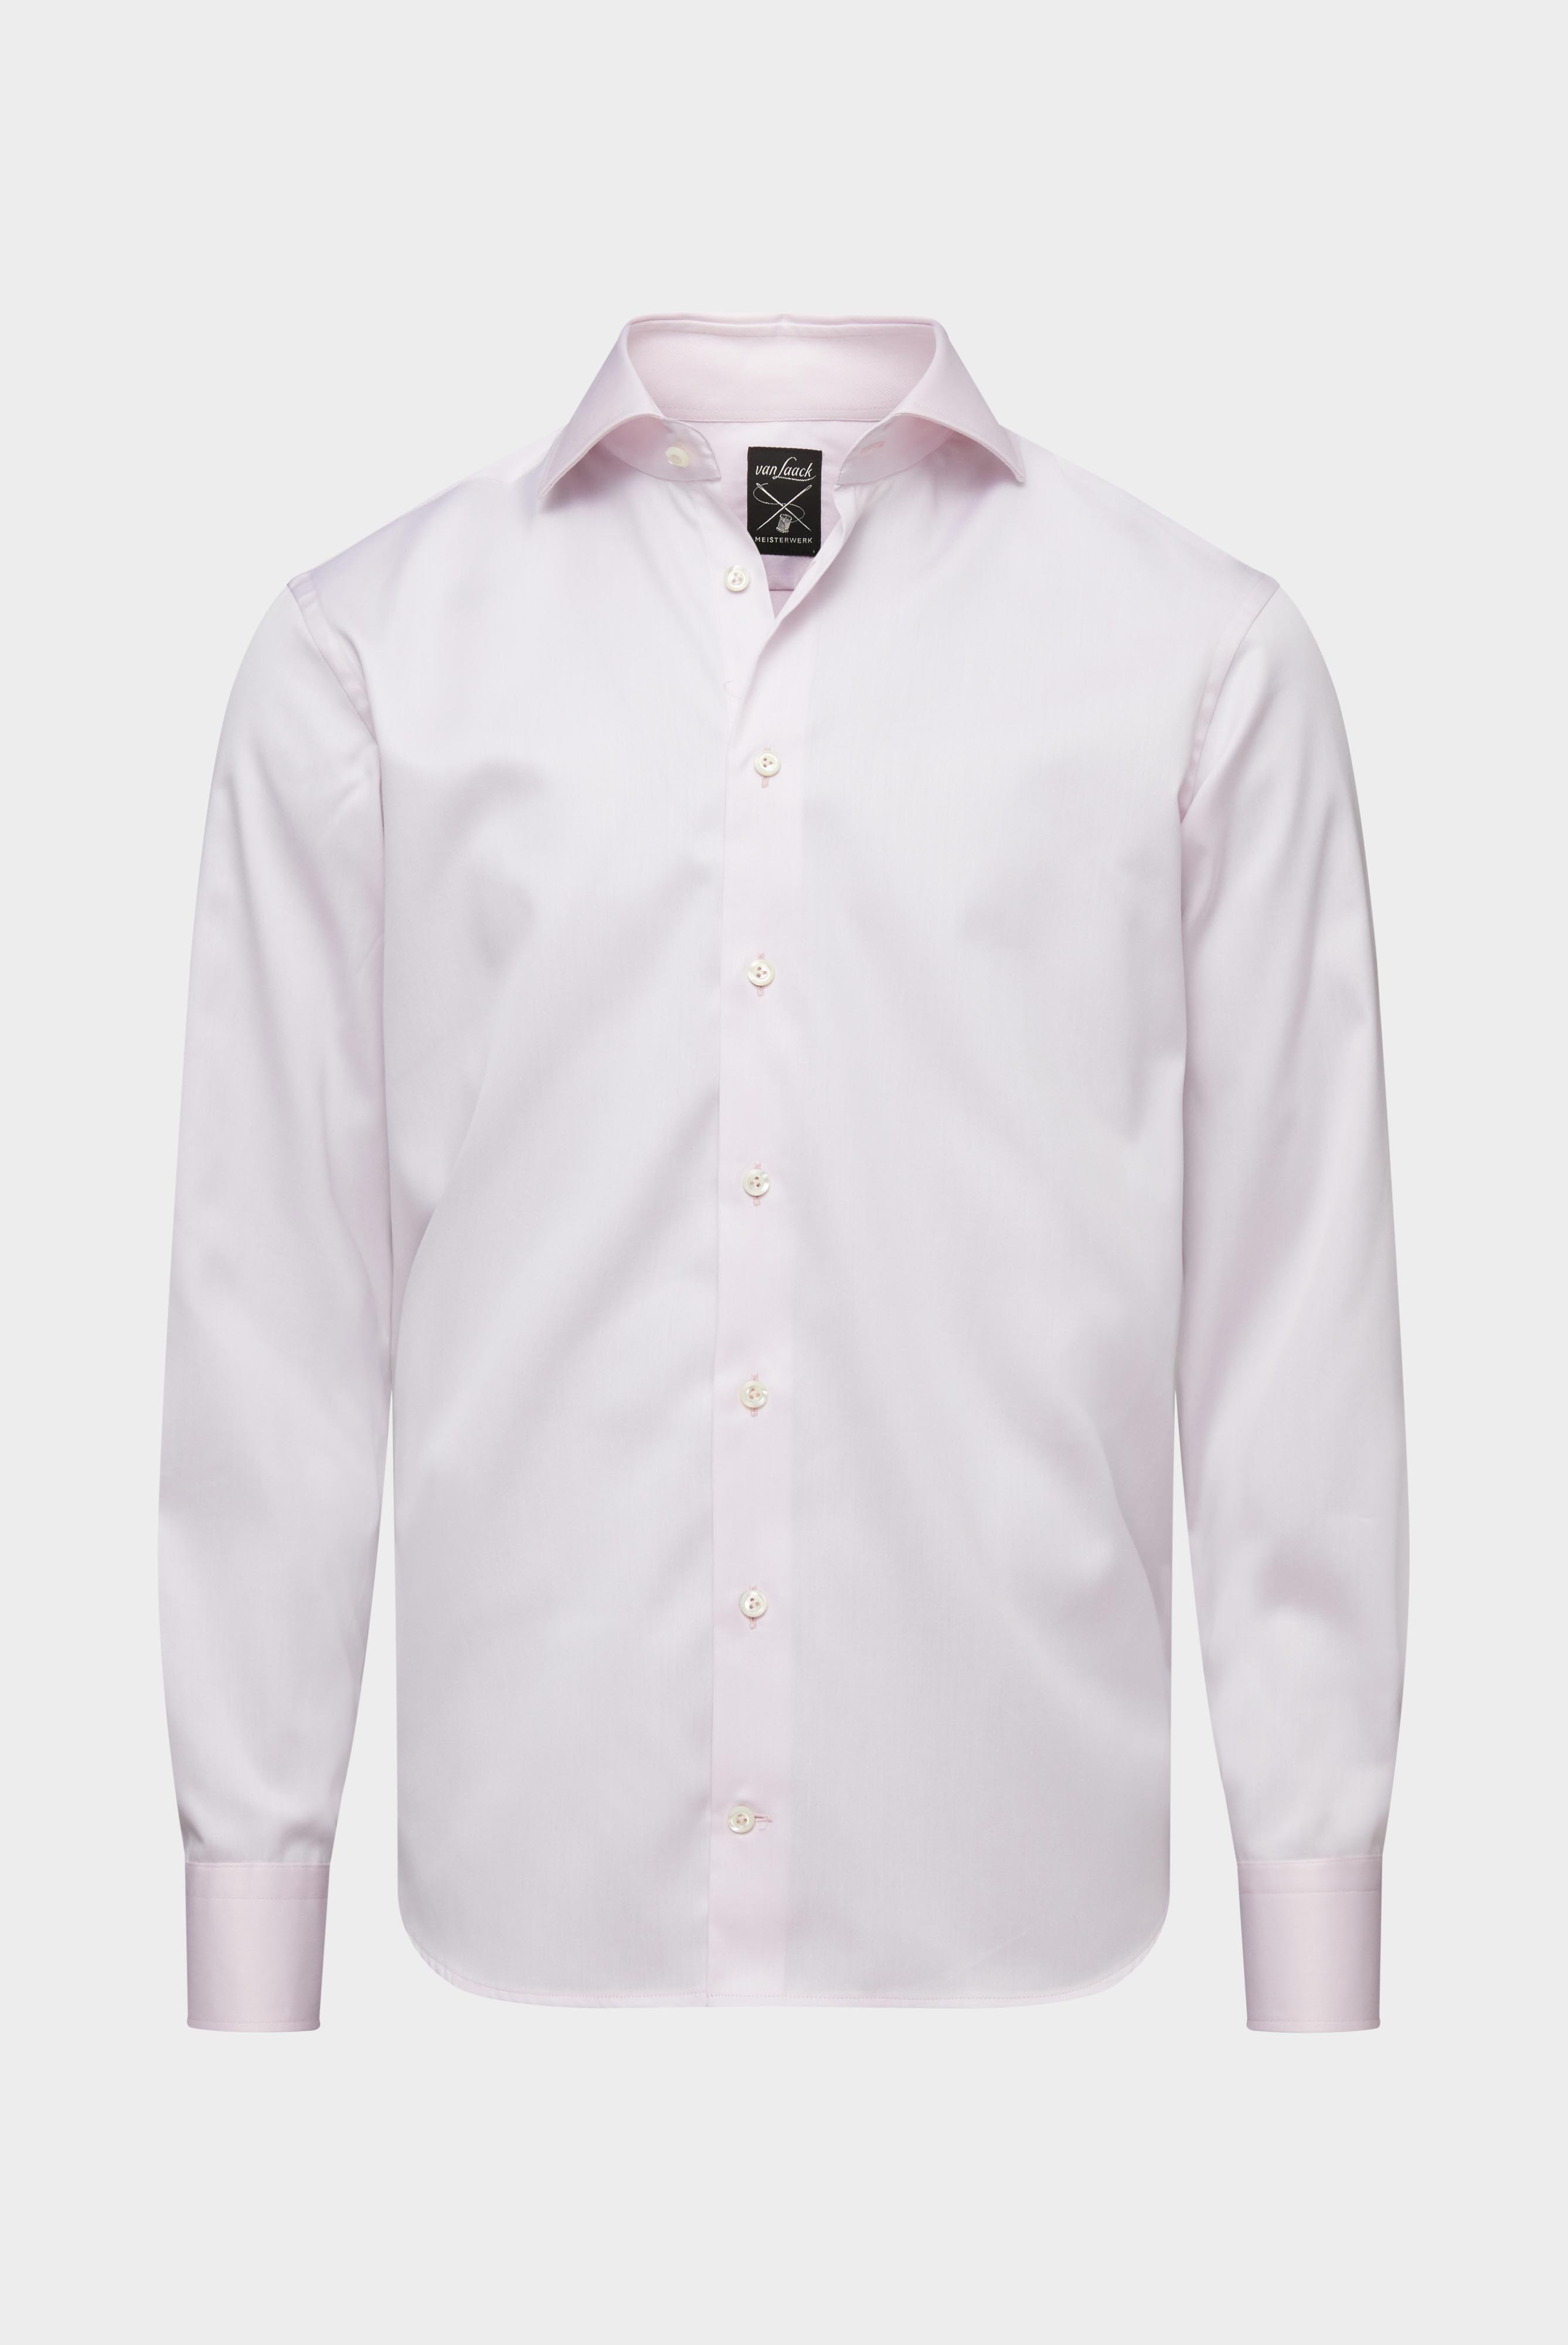 Bügelleichte Hemden+Bügelfreies Twill Hemd Tailor Fit+20.2020.BQ.132241.510.45